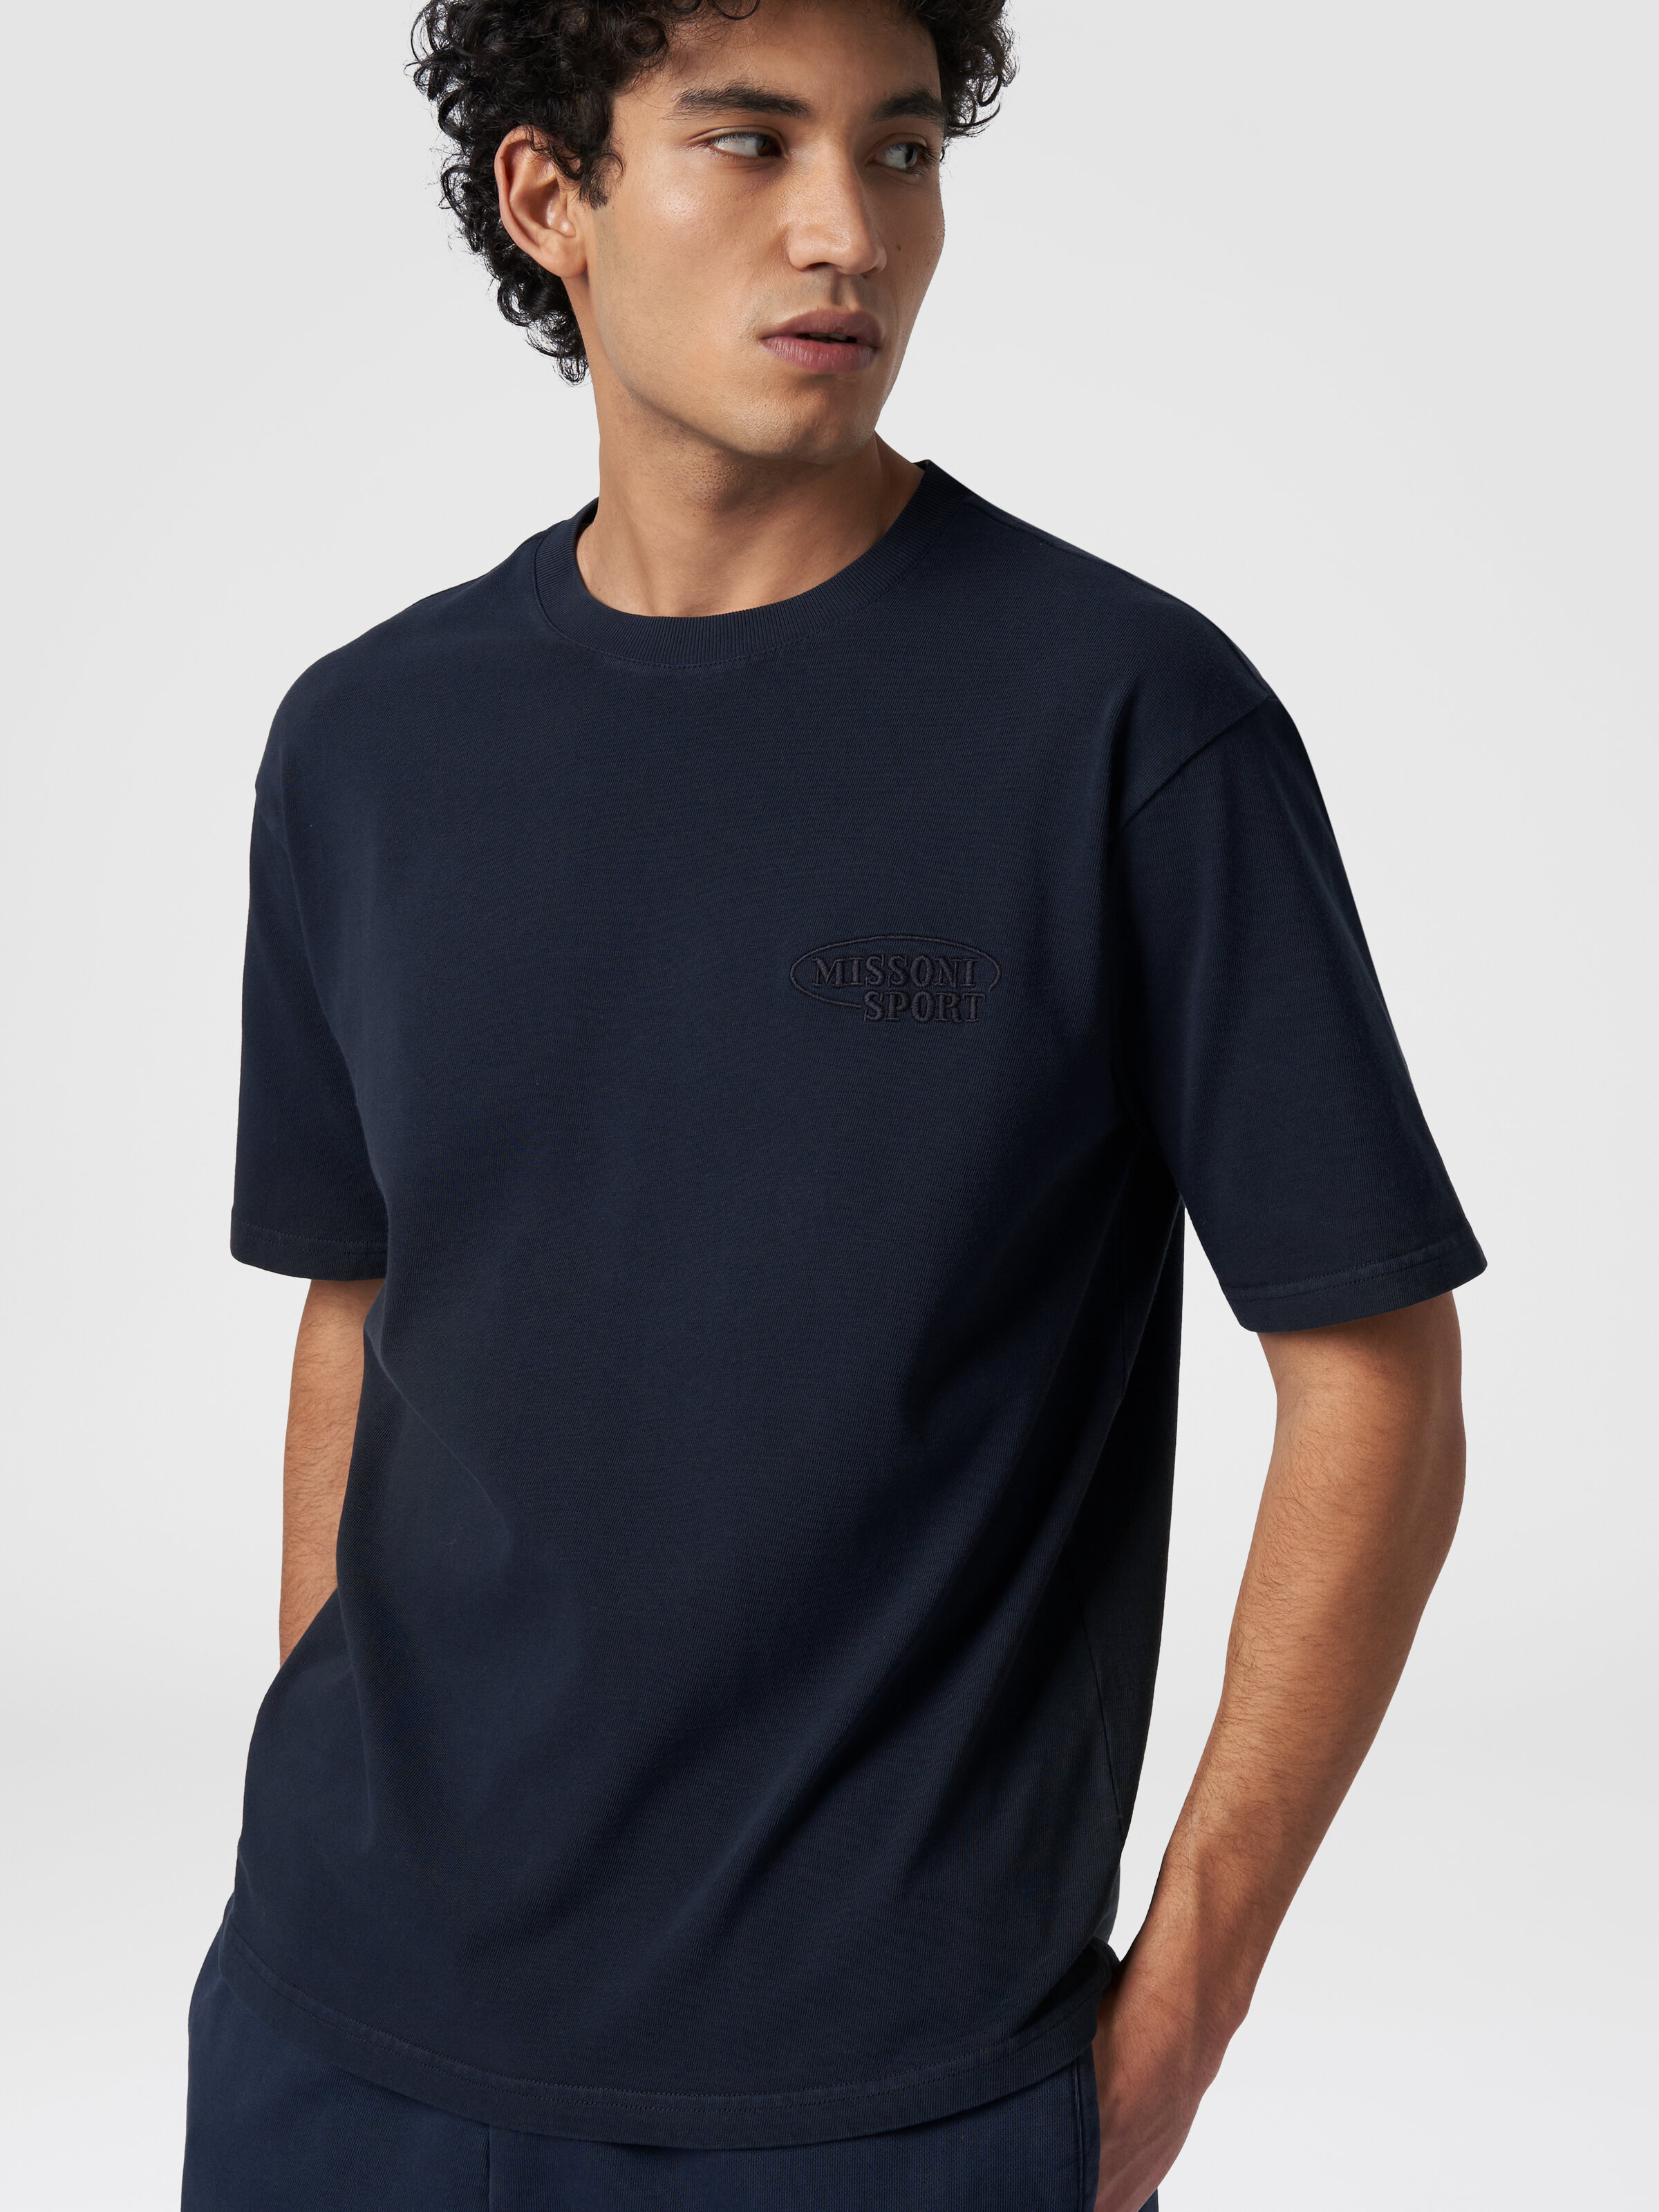 T-shirt girocollo in cotone con logo, Blu Navy  - 3